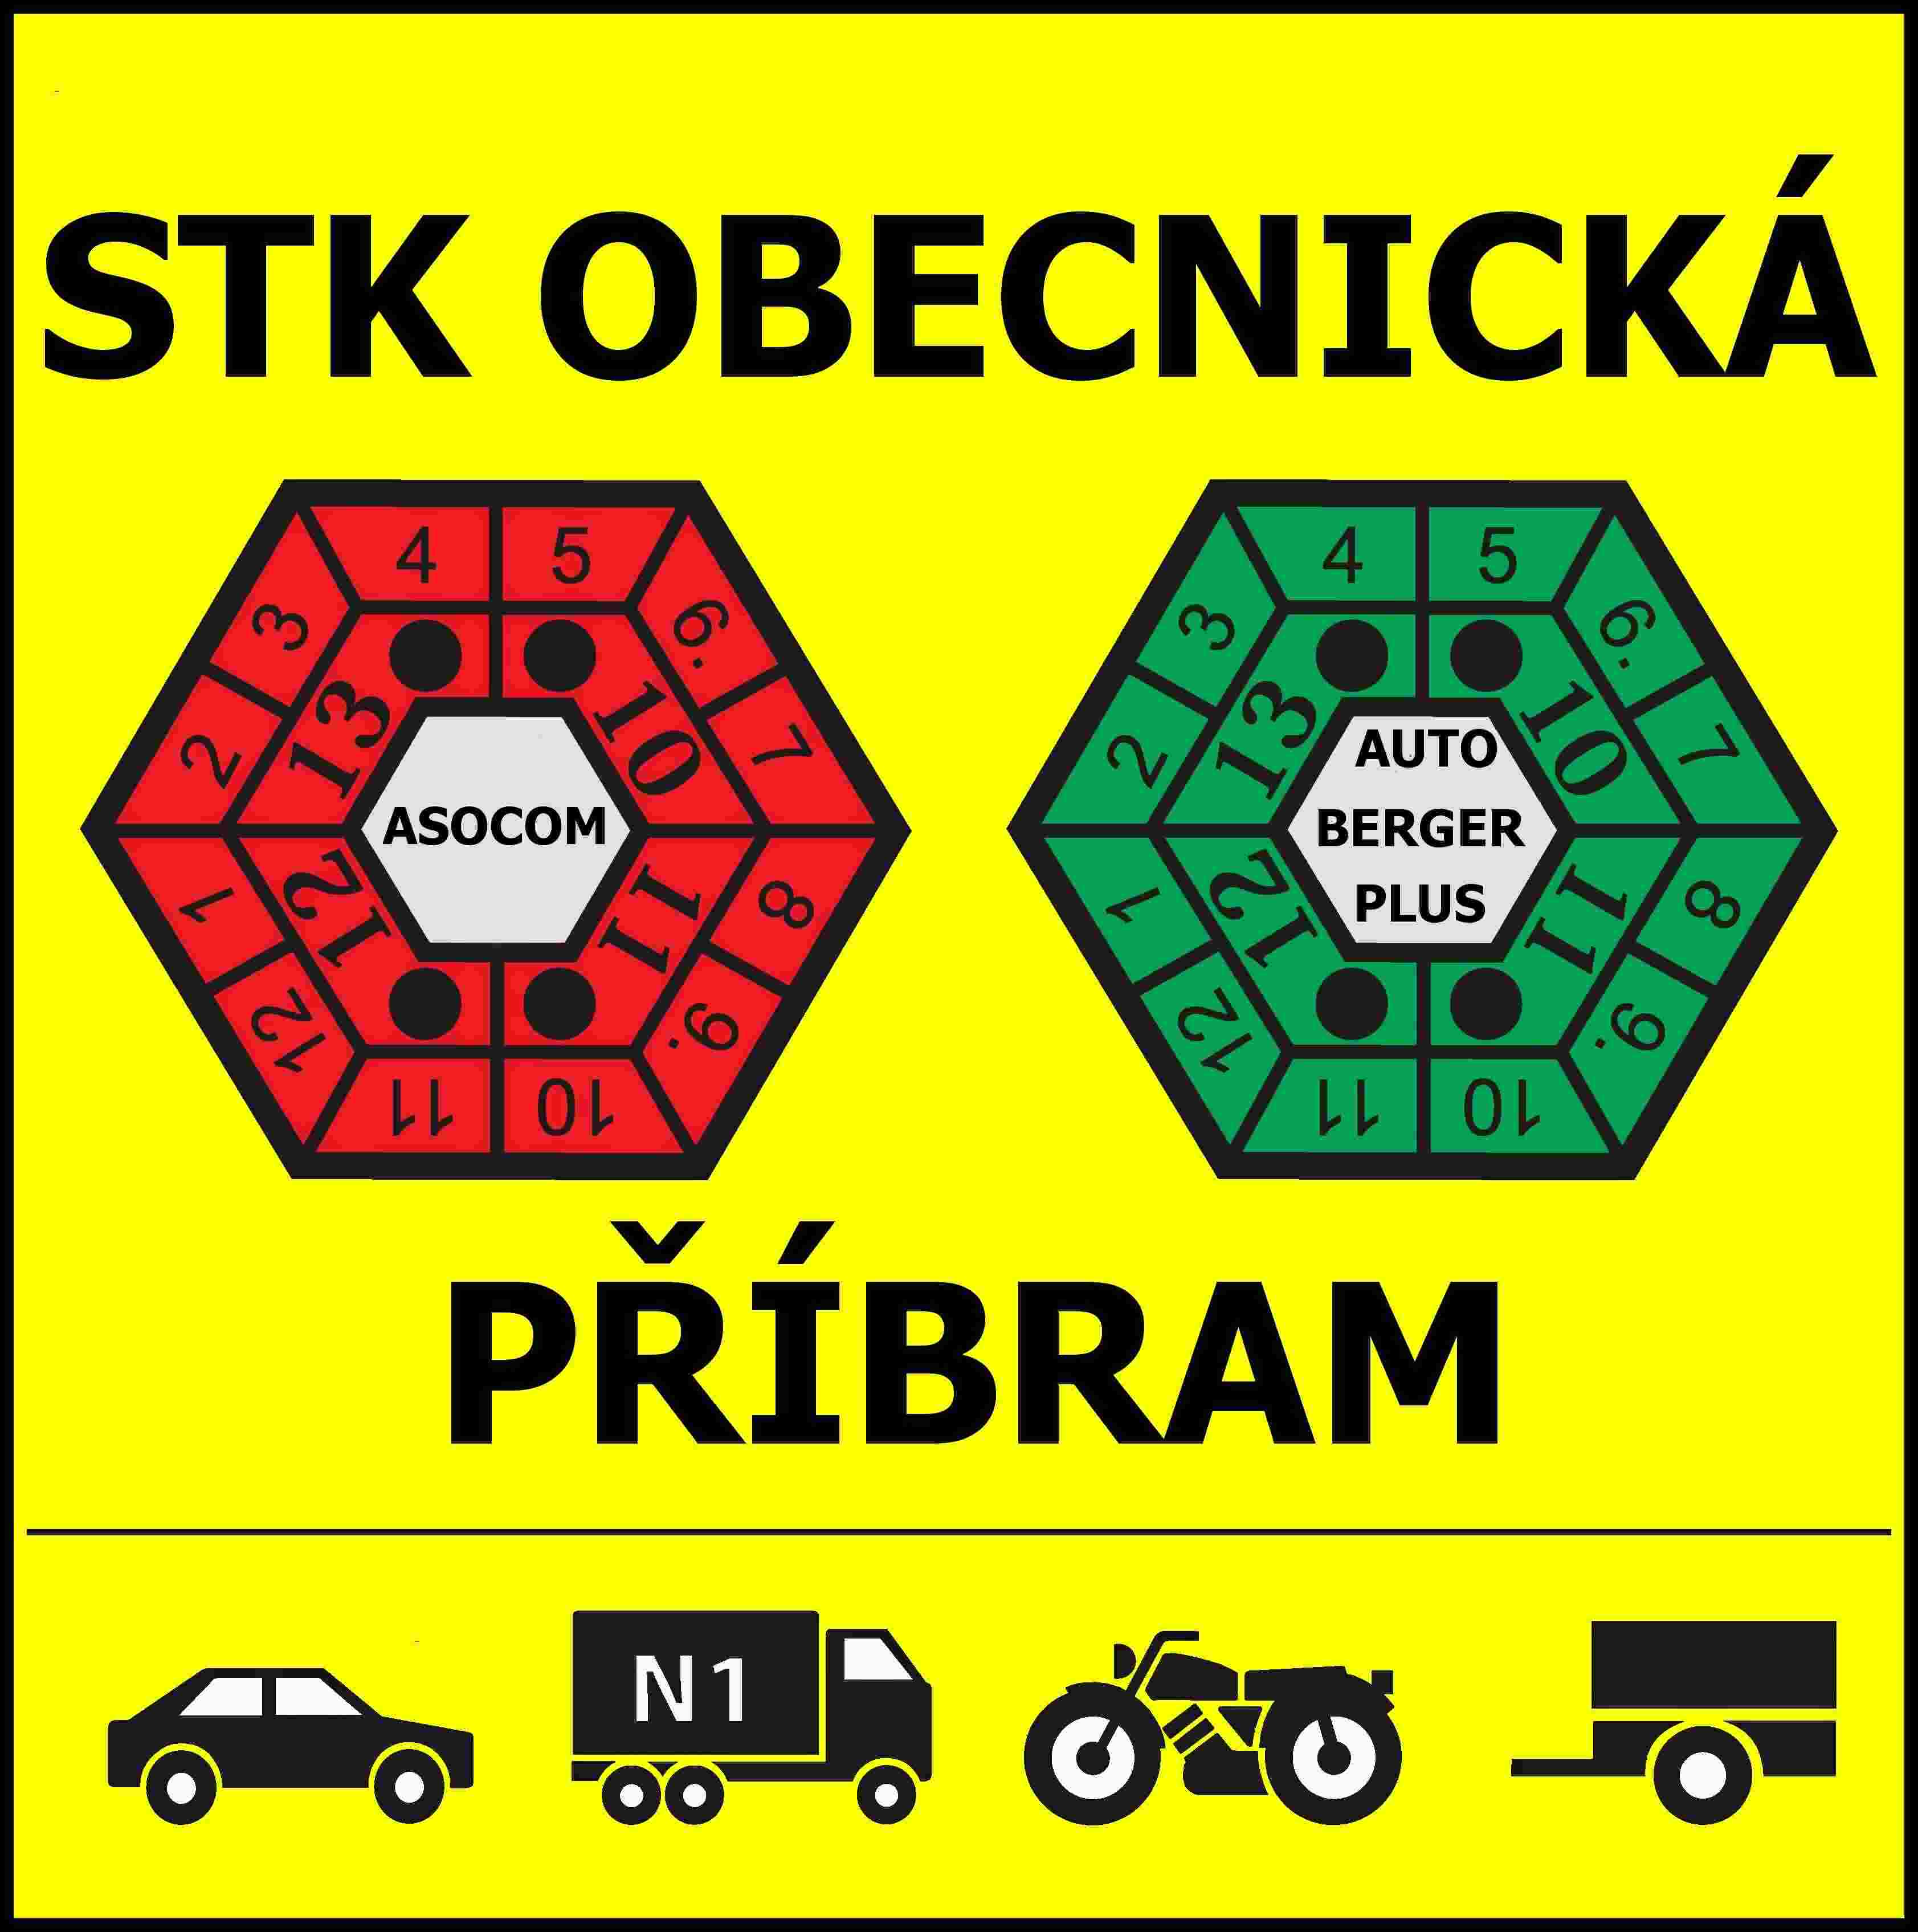 STK Obecnická - Příbram